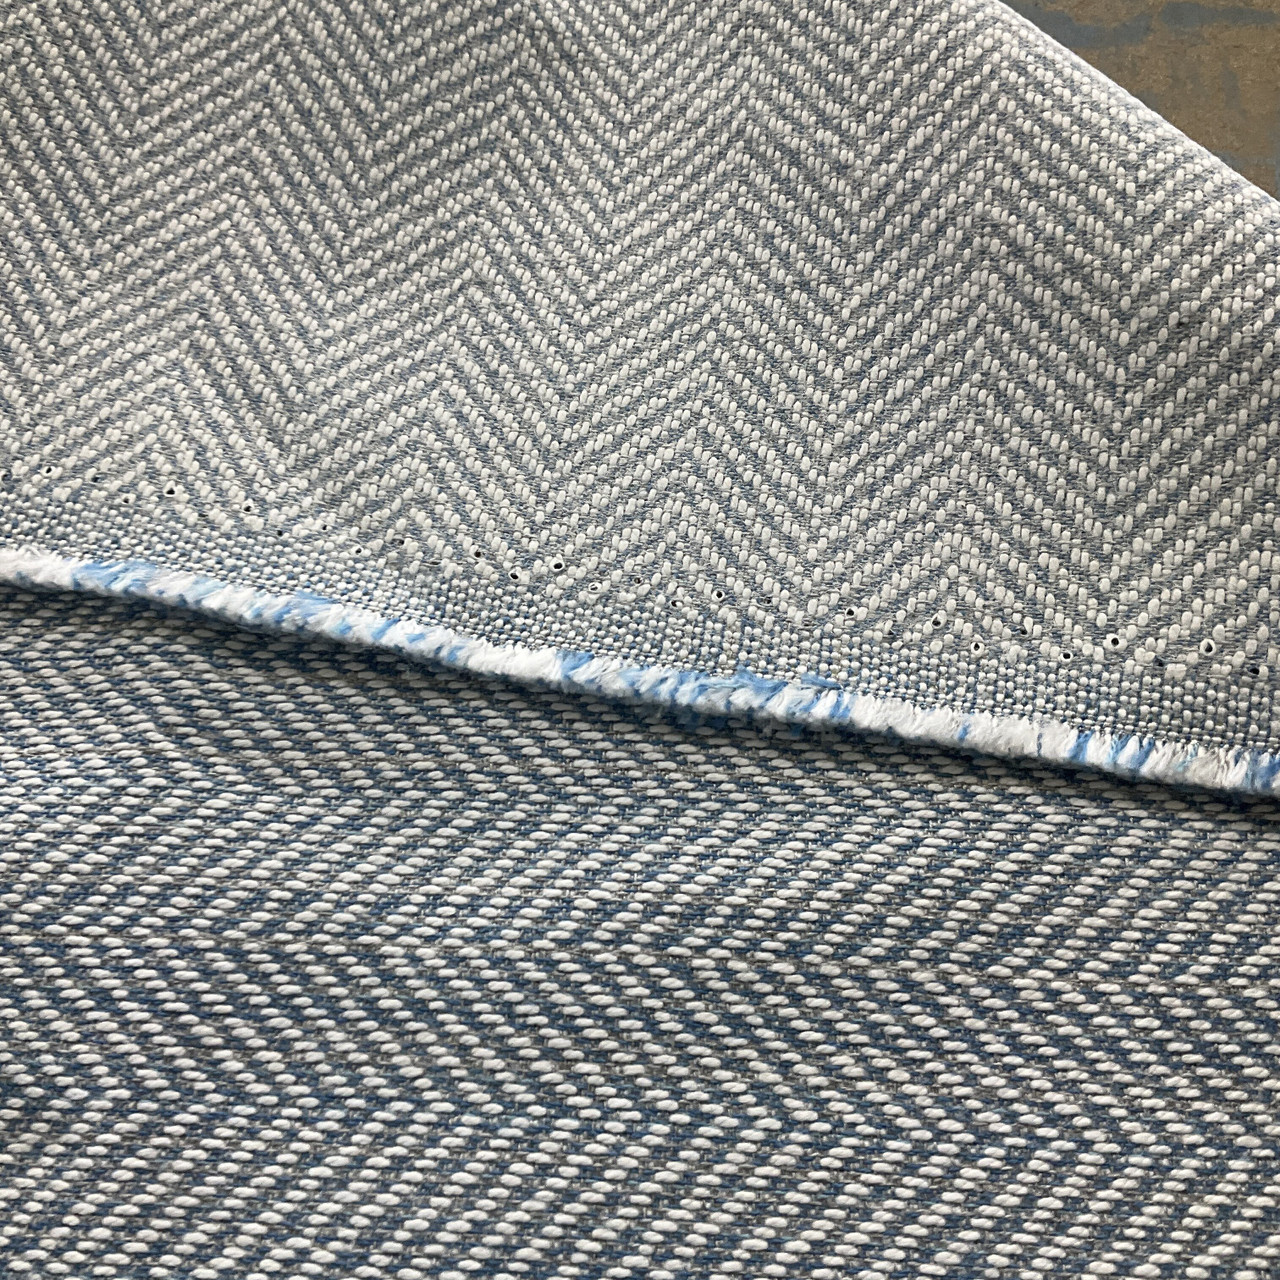 Posh Lining Fabric